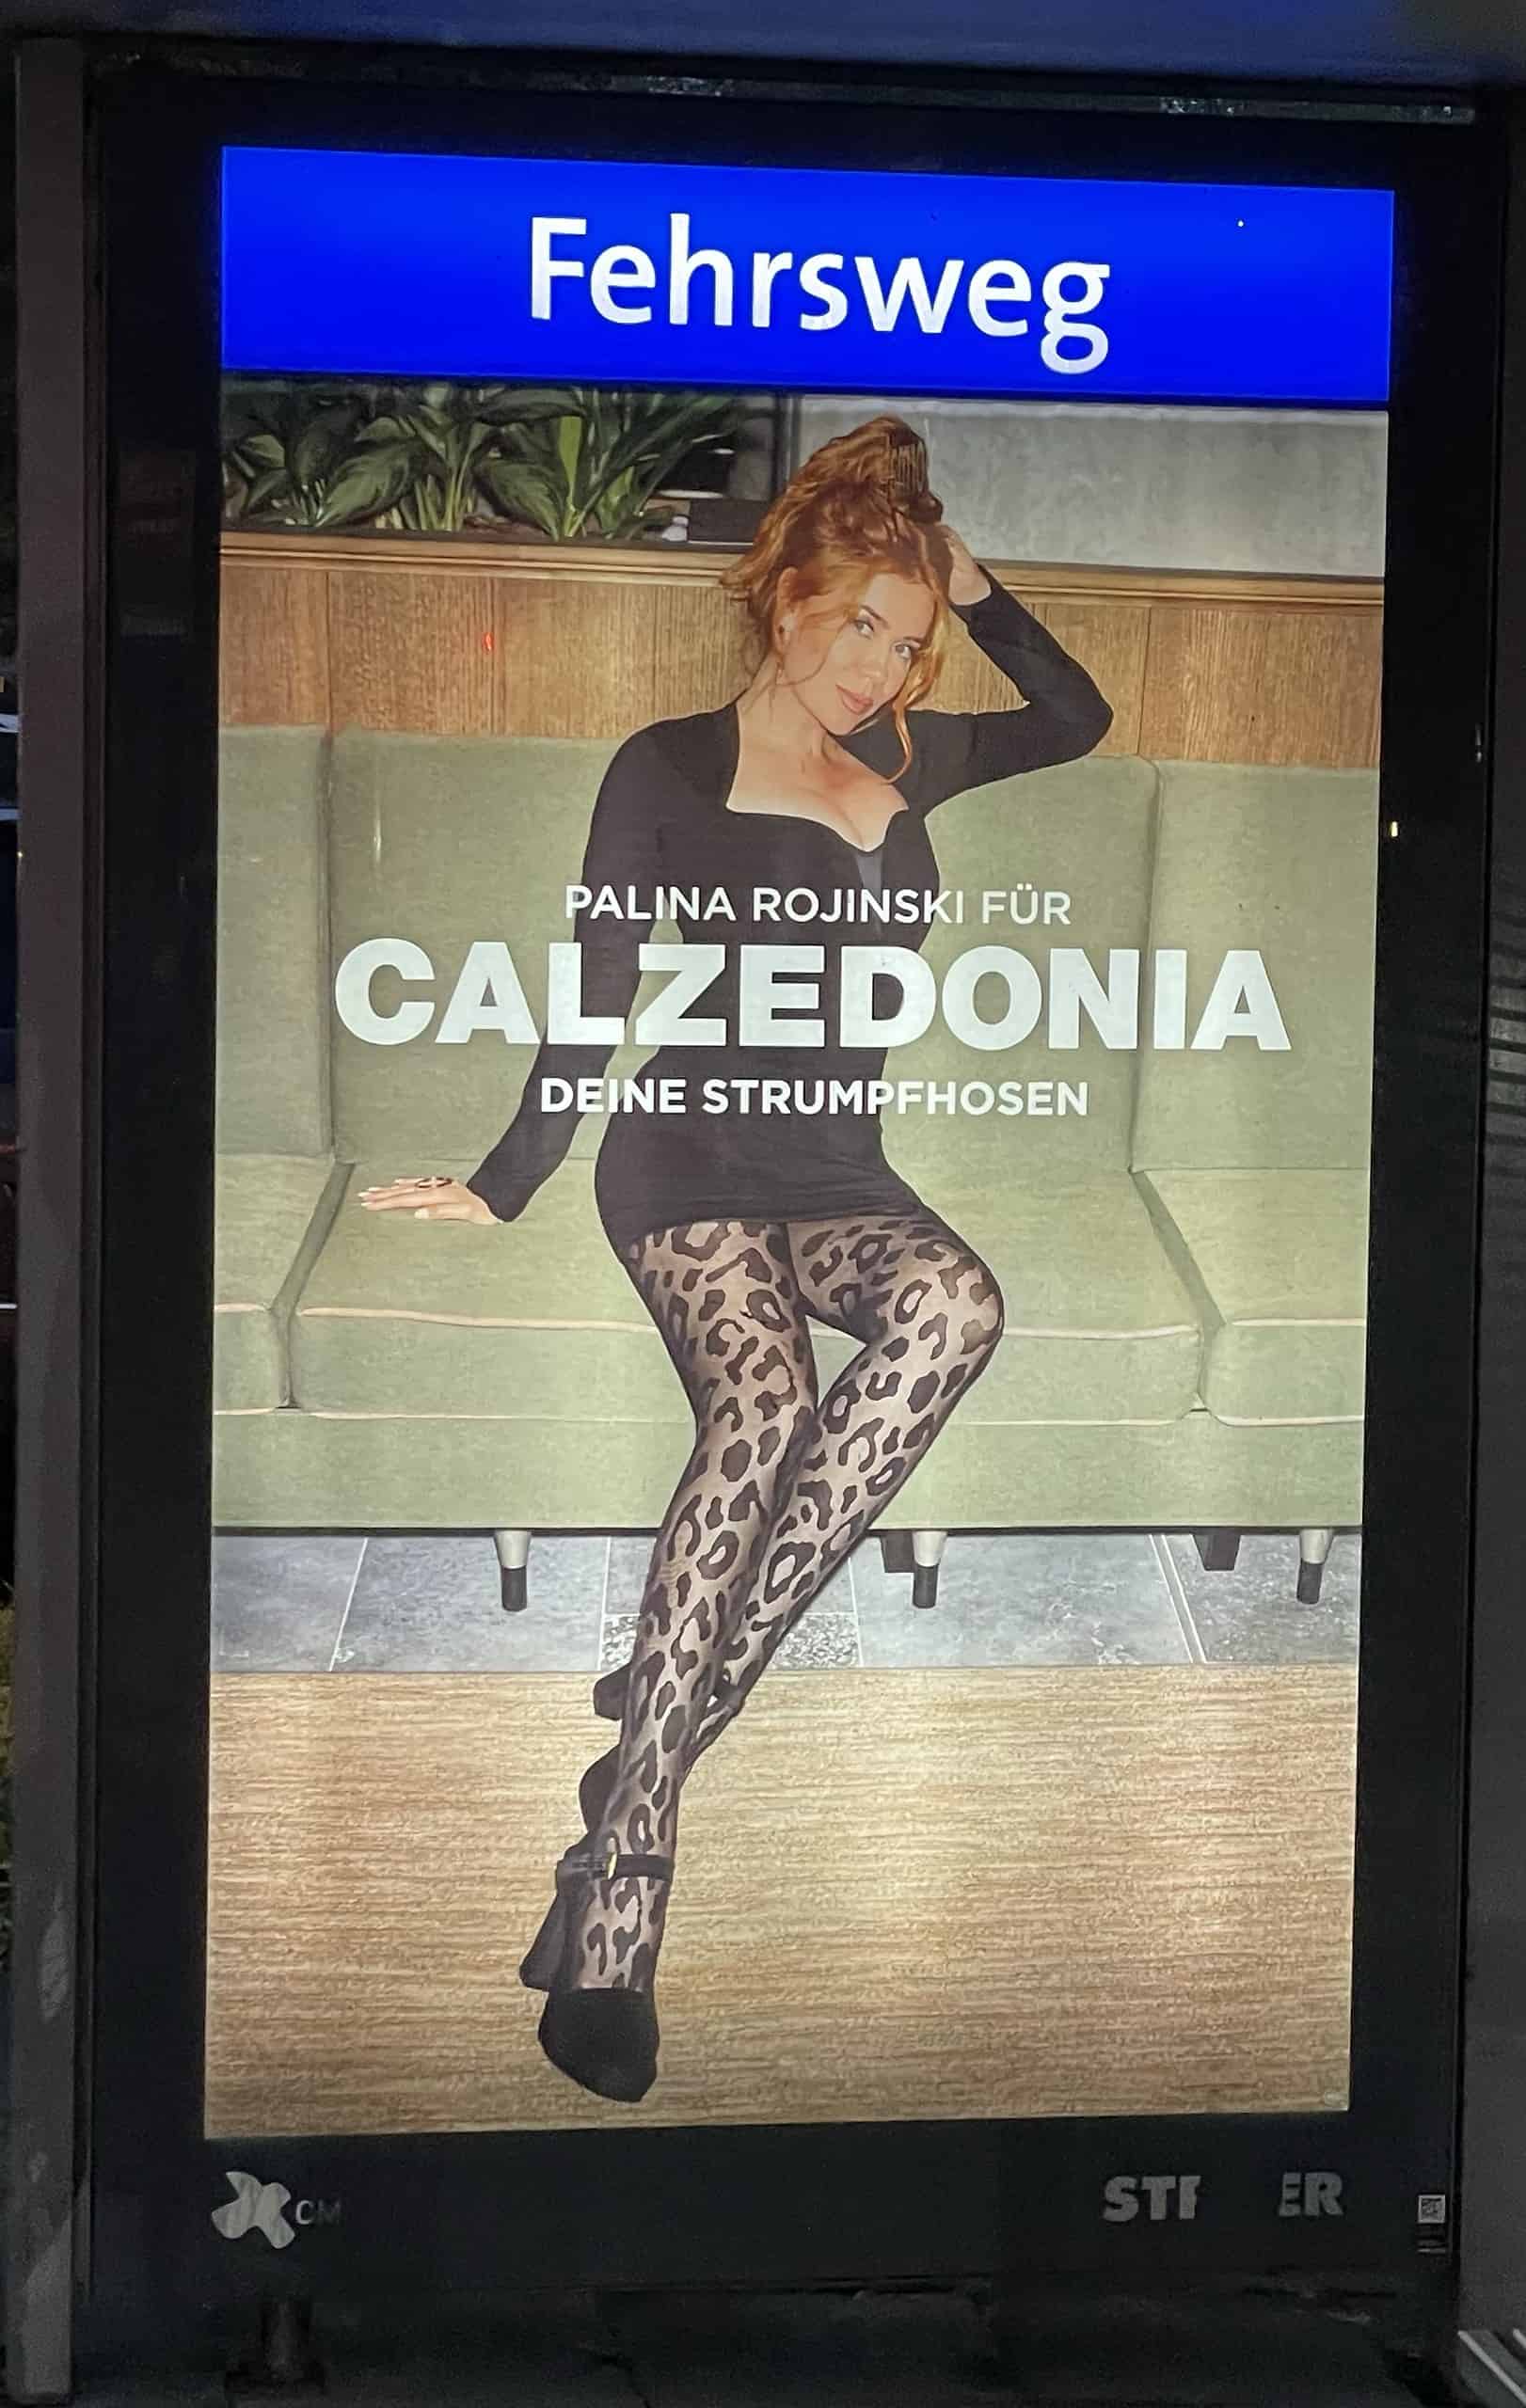 Sexy Palina Rojinski in schwarzem, kurzem Kleid und böickdichter grauer Strumpfhiose mit schwarzem Raubkatzenmuster sowie schwarzen High Heels macht Calzedonia-Reklame.